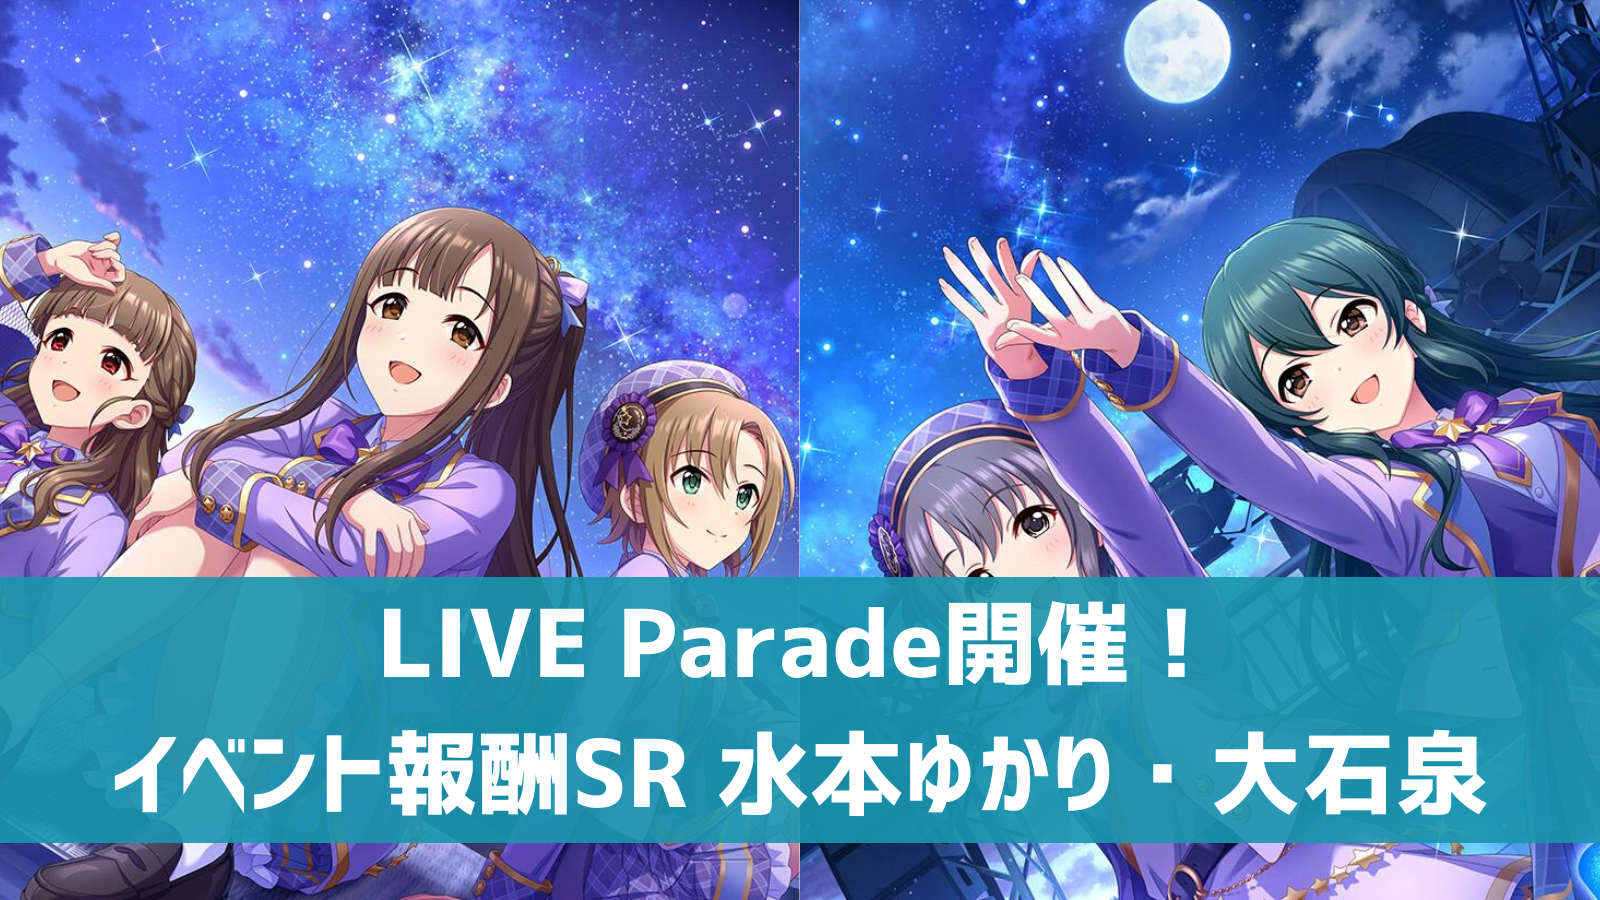 LIVE Parade